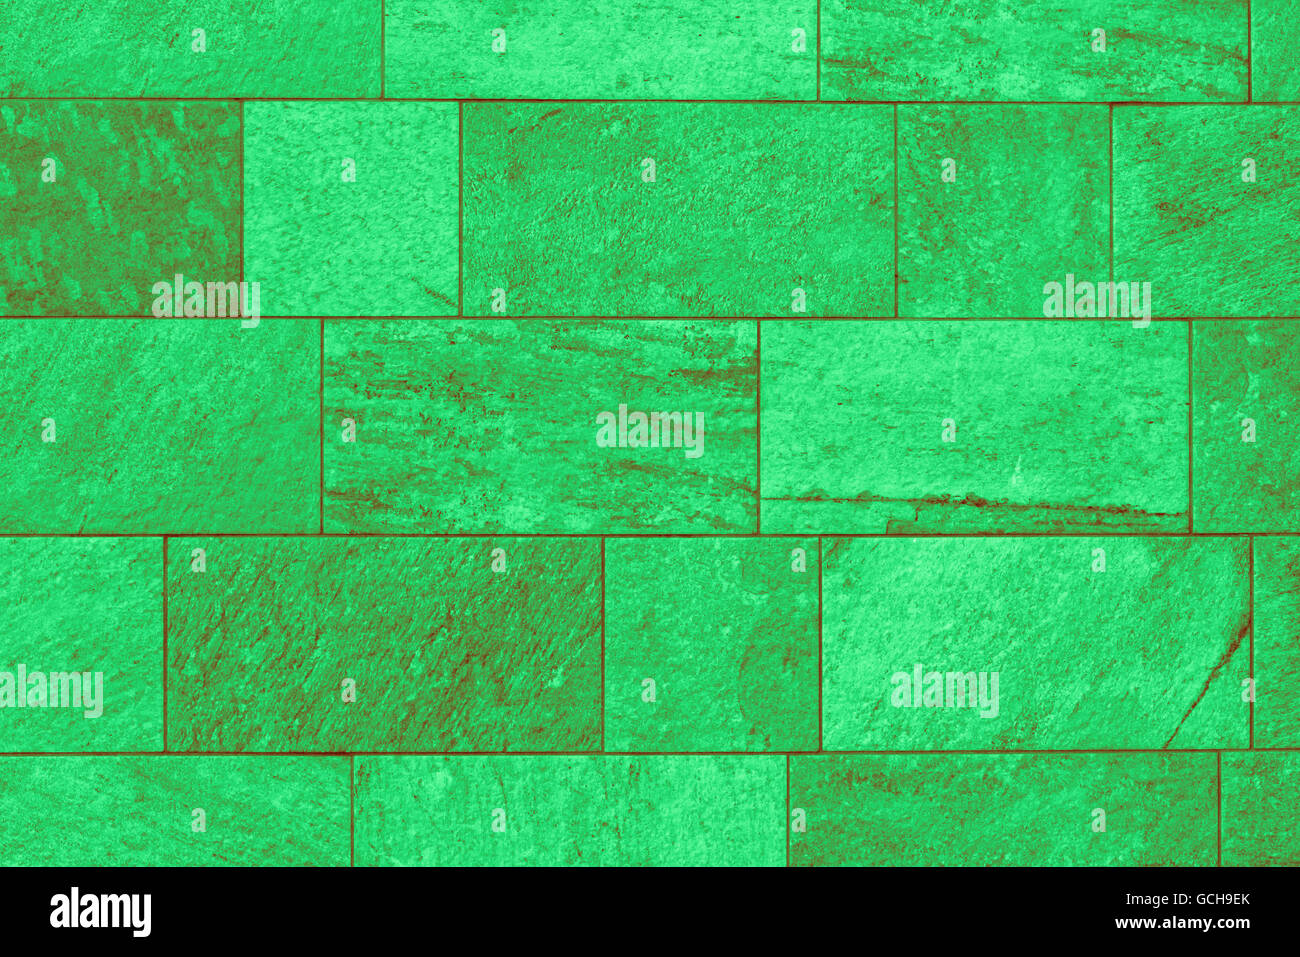 Perfetta luce verde scuro rossiccio verdastro ad alta risoluzione urbano naturale muro di mattoni con uno sfondo decente texture di superficie Foto Stock